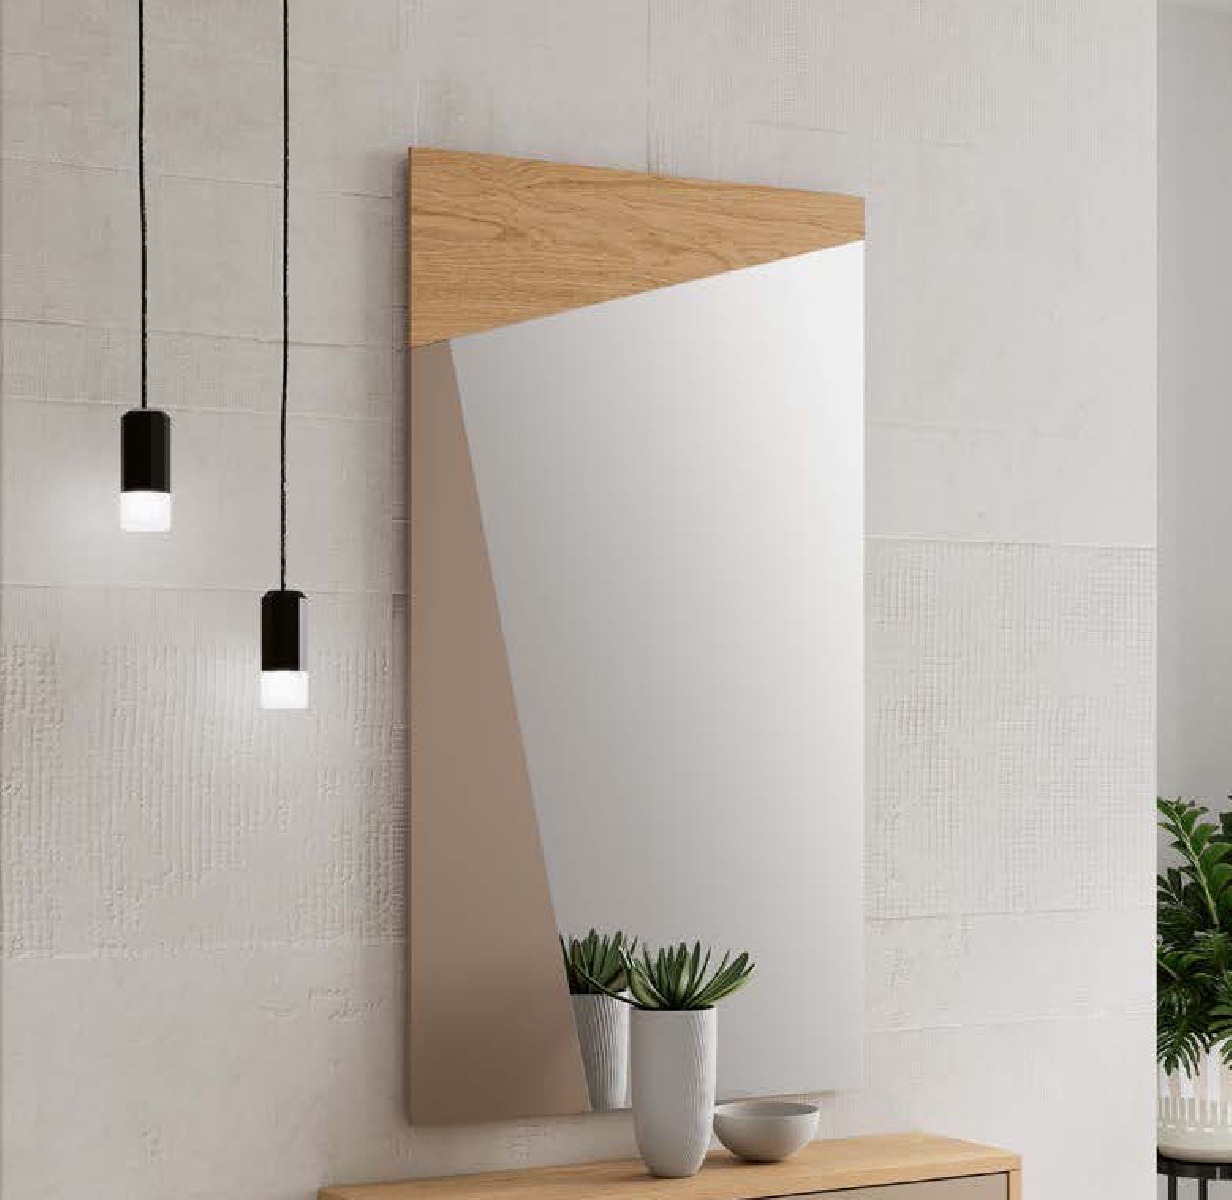 Зеркало с рамой Disemobel Kendra, цвет Nordico/Arena-1 Mate, размер 60x2x110 см (4028)4028